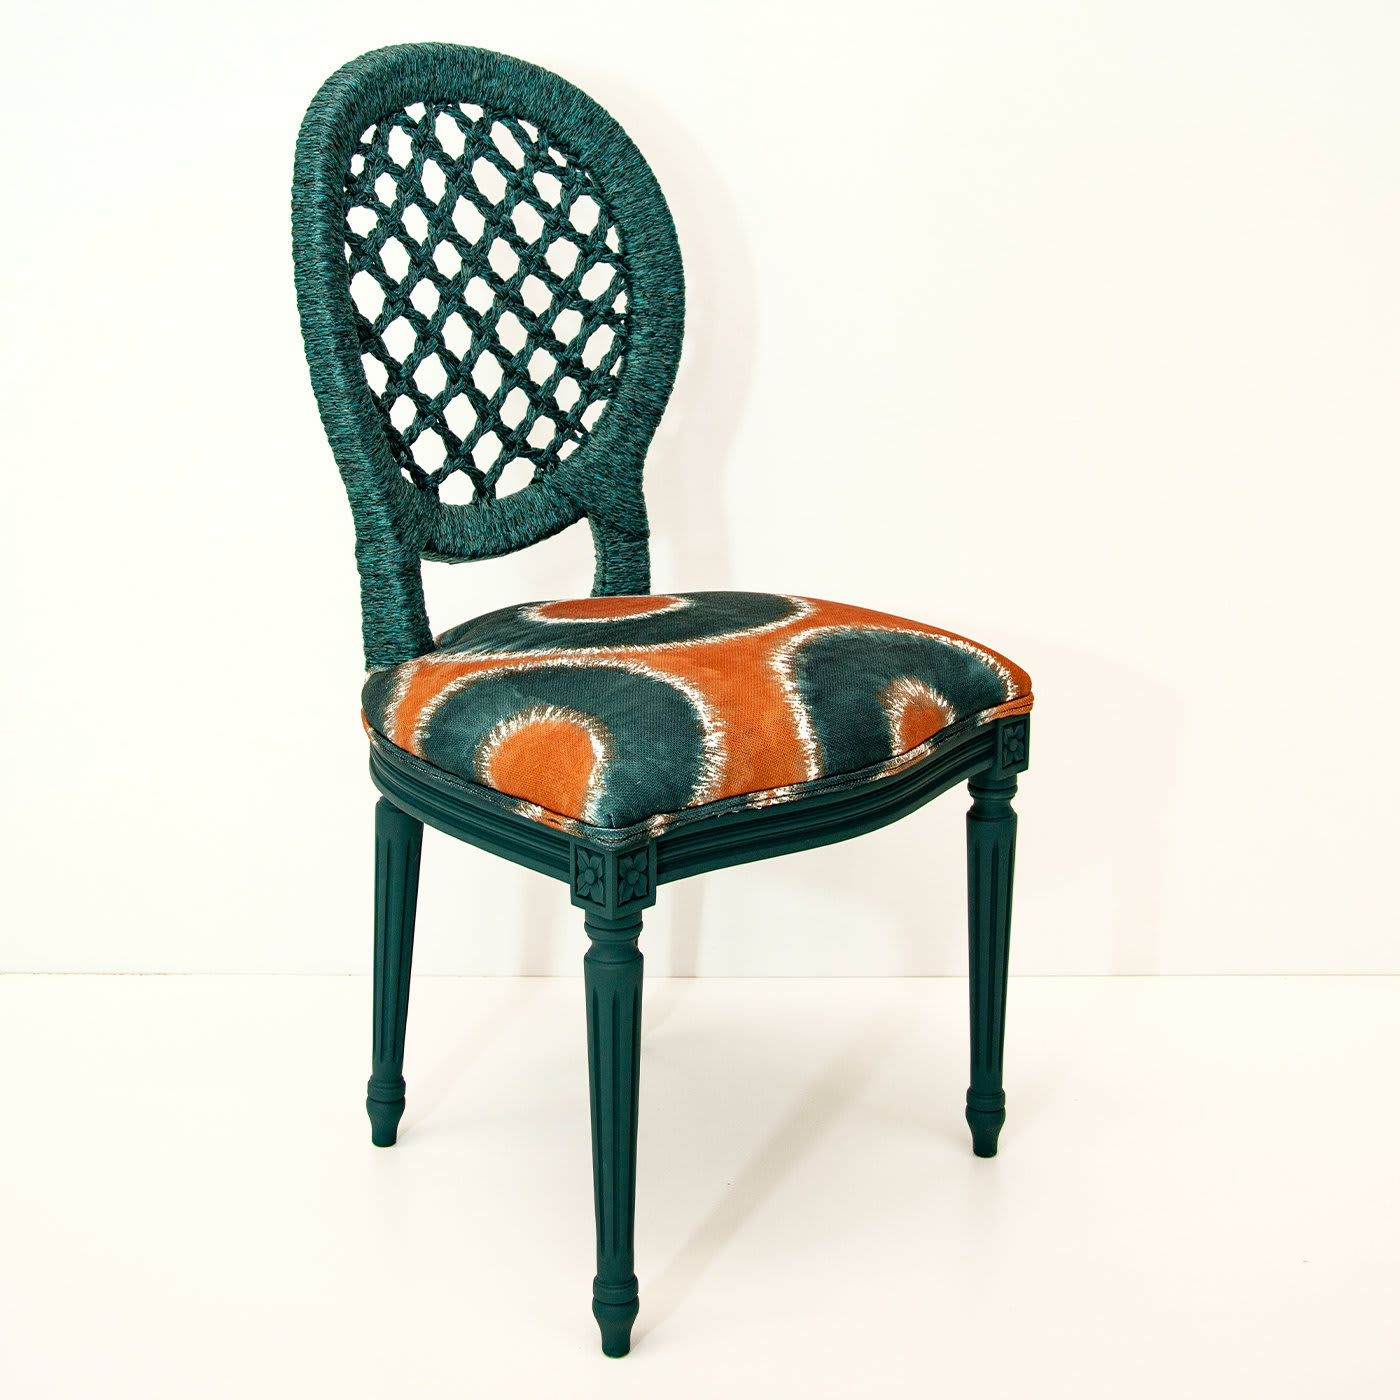 Amalfi Chair by Giannella Ventura - Via Rossini Milano